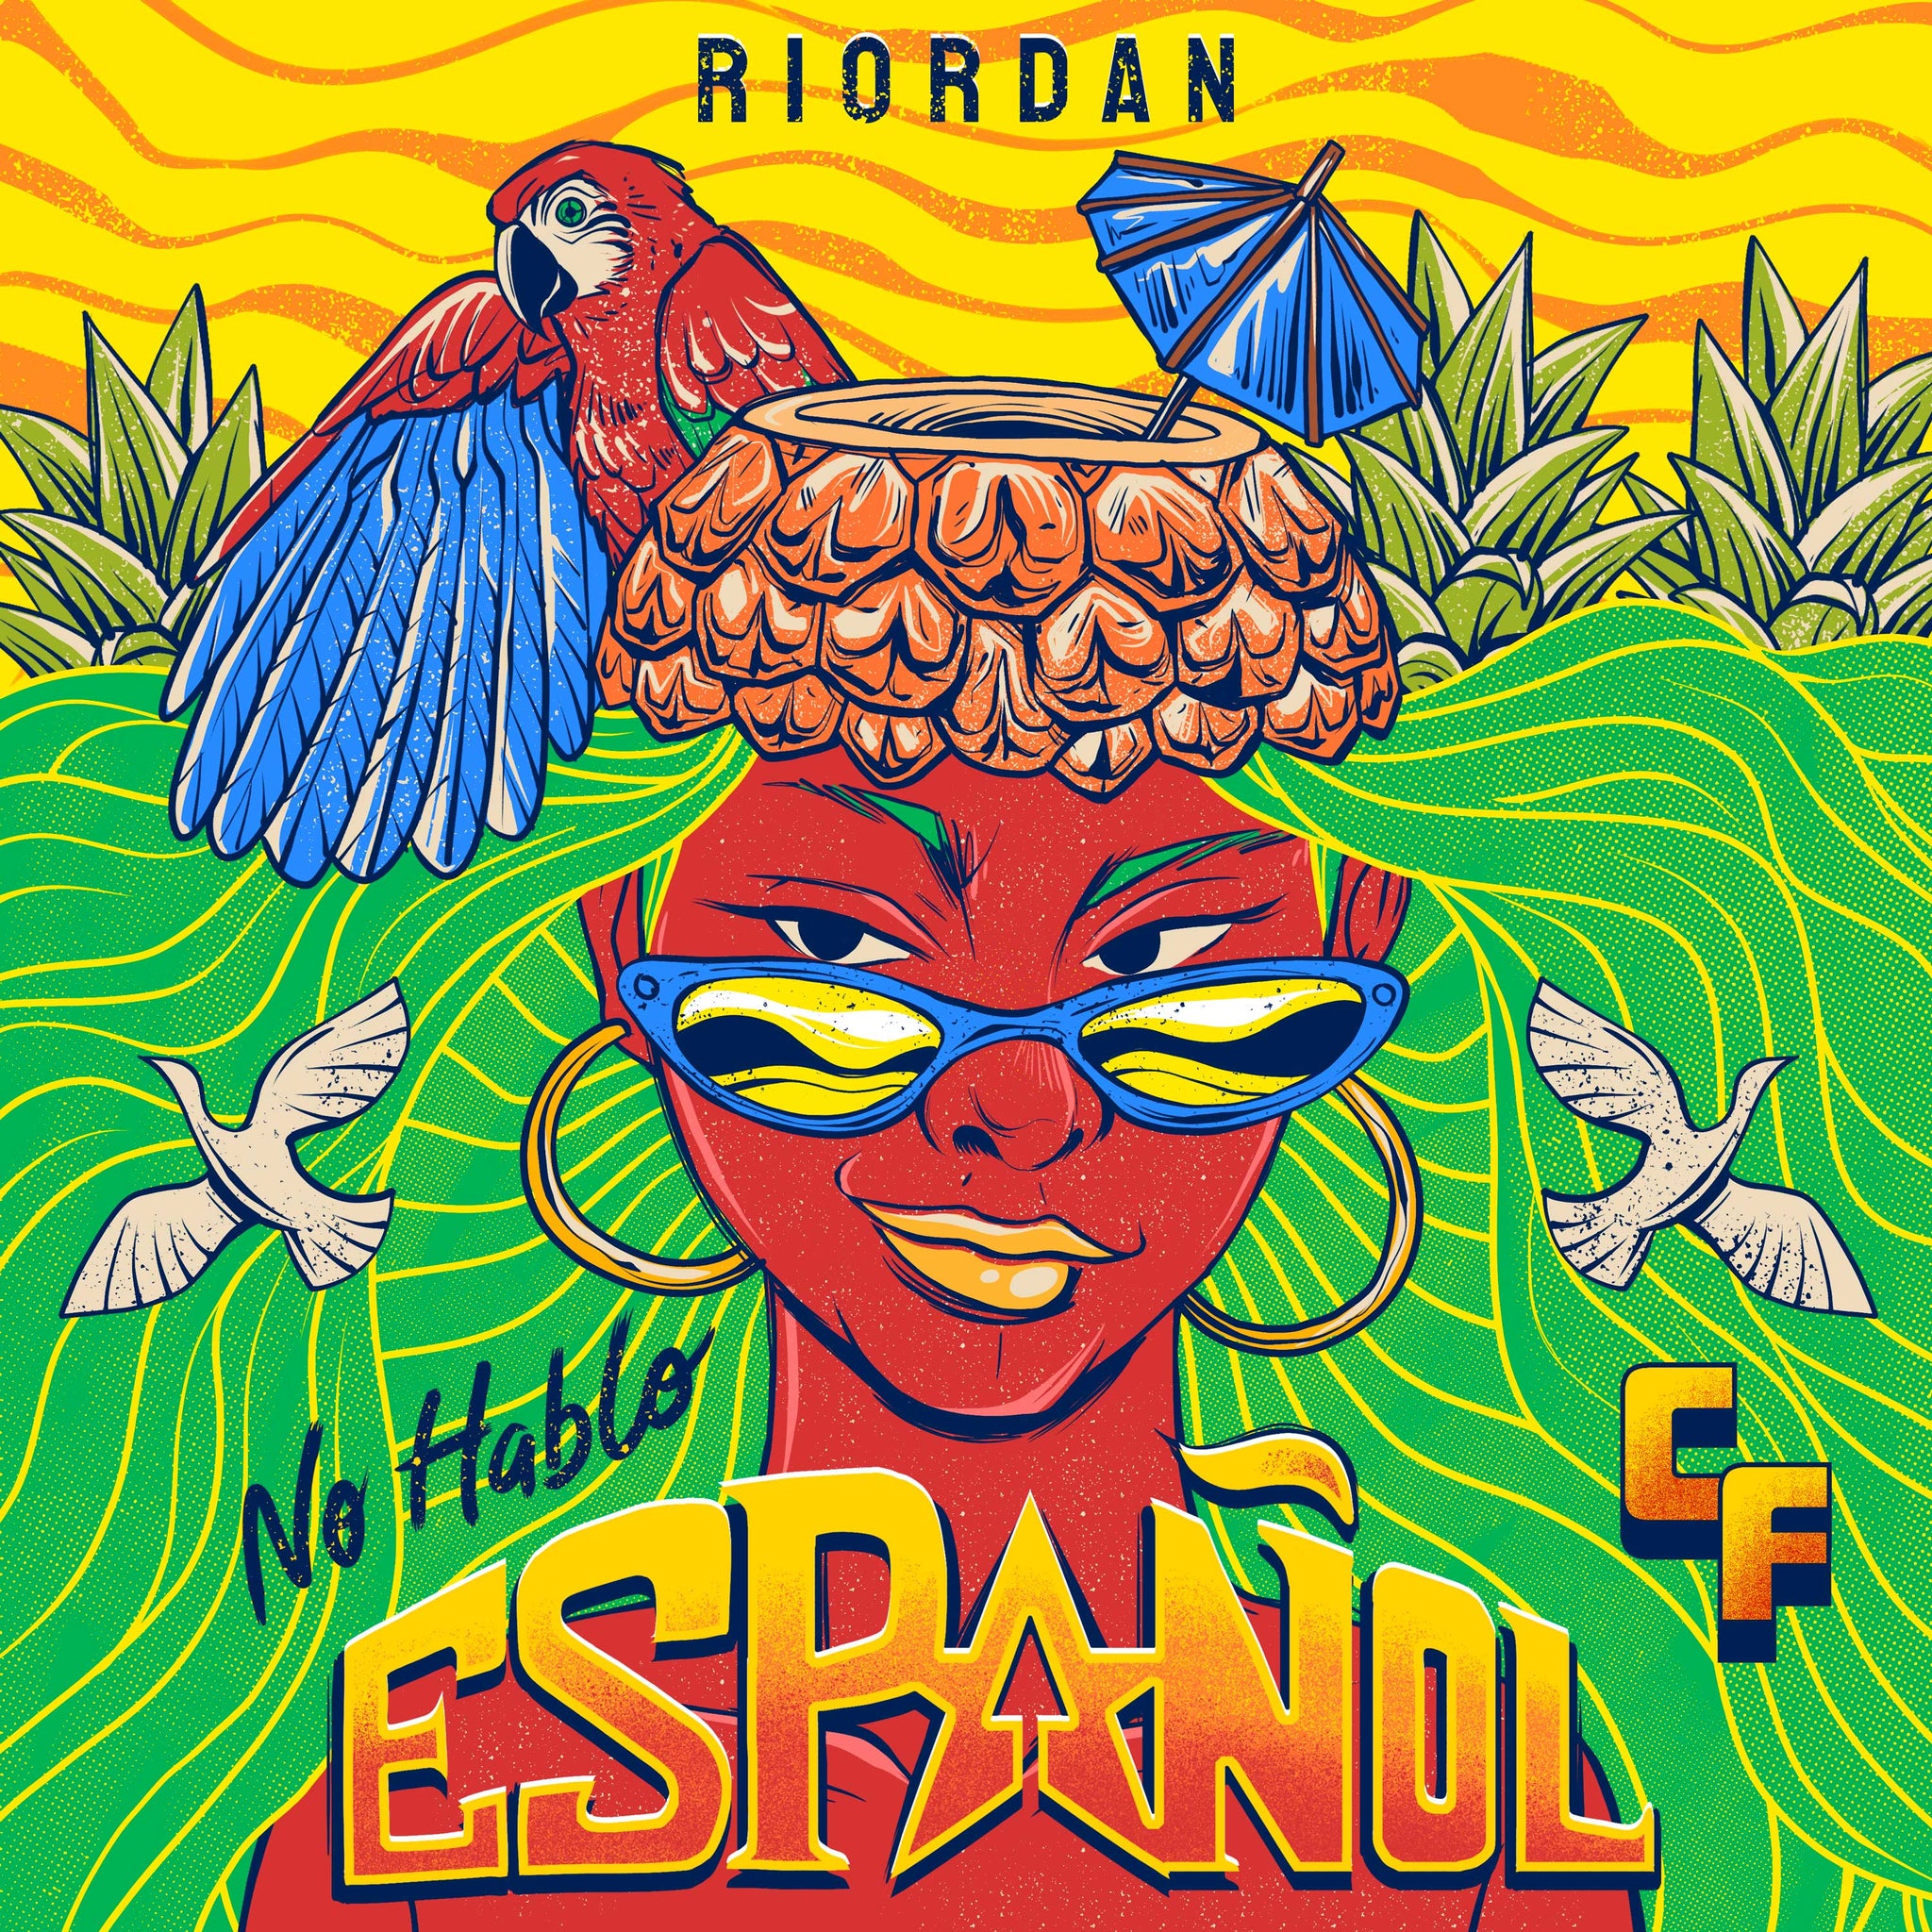 No Hablo Español - Riordan - Scraps Audio